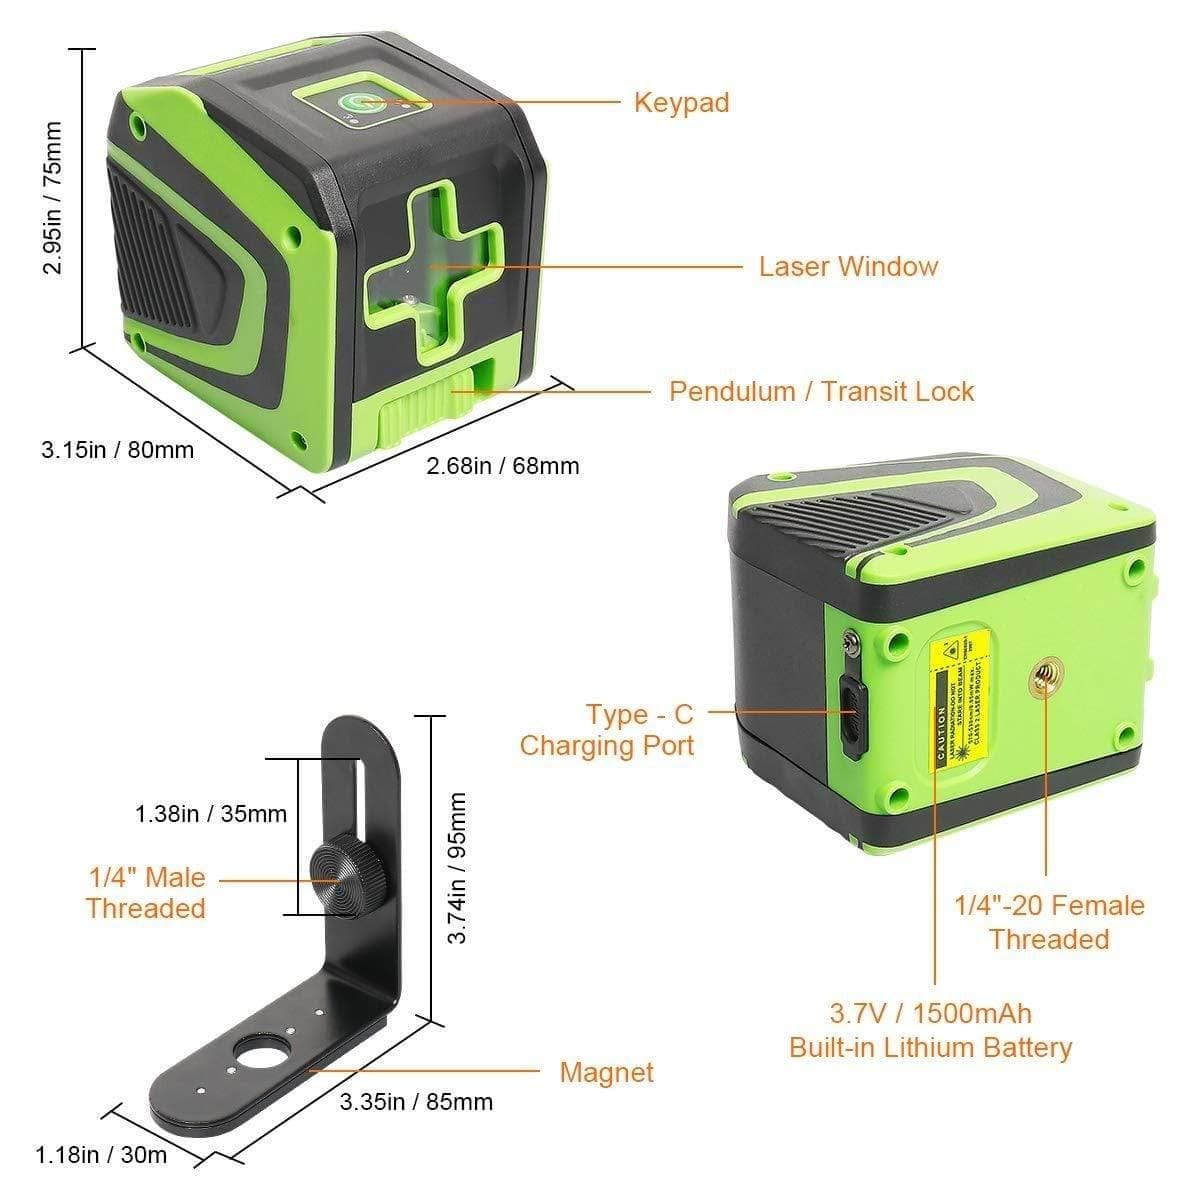 Huepar 5011G - Green Portable Line Laser with Pulse Mode & 360° Magnetic Rotating Base - HUEPAR US